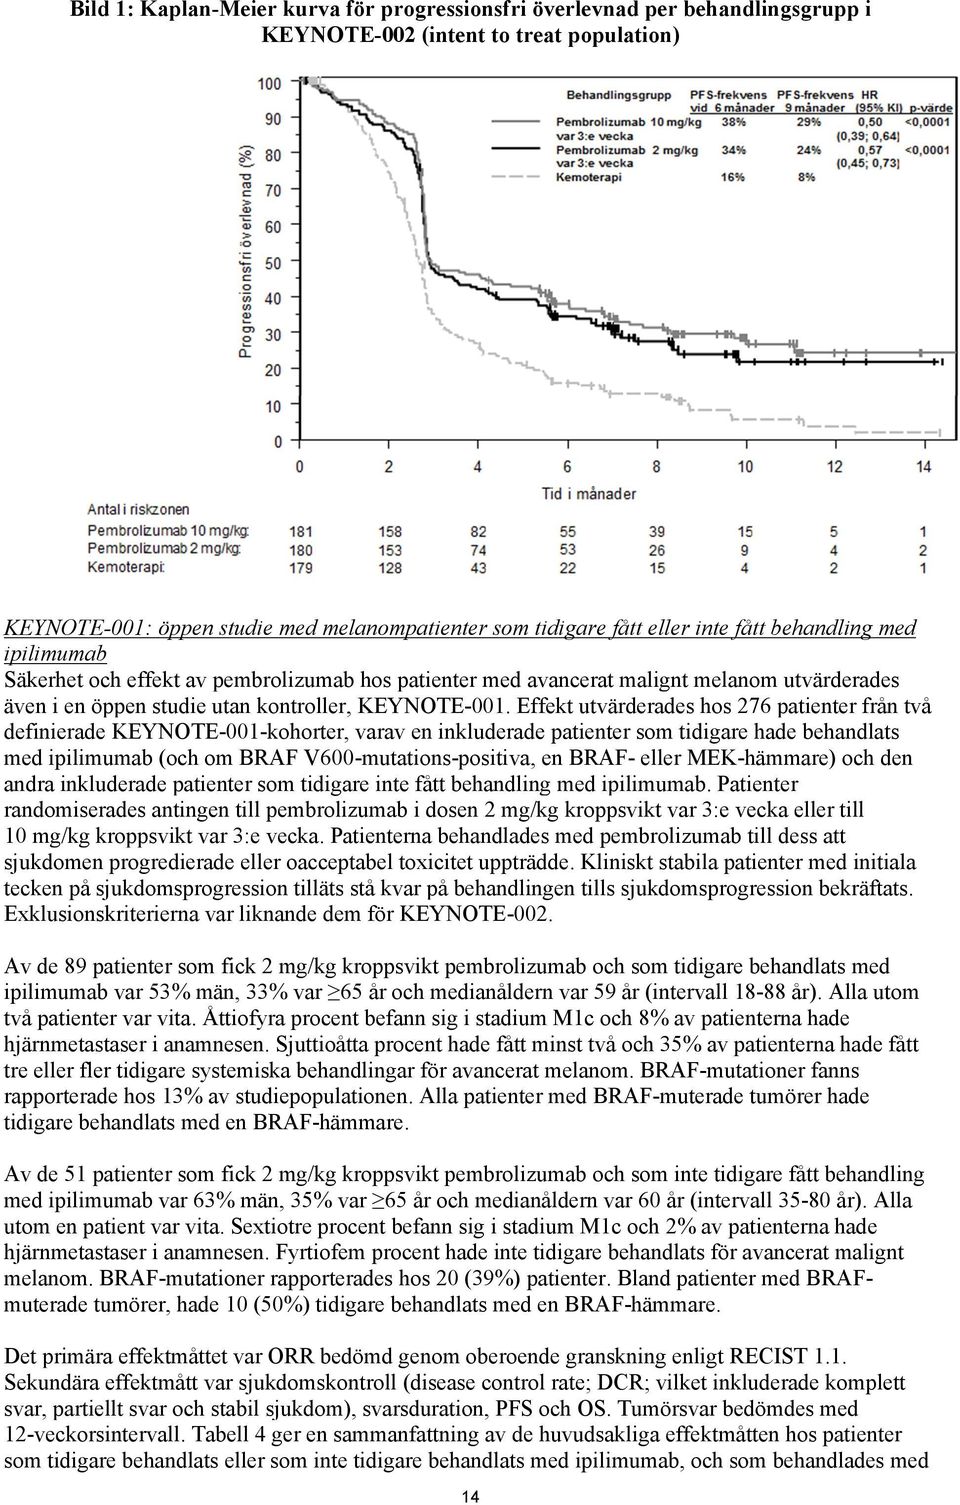 Effekt utvärderades hos 276 patienter från två definierade KEYNOTE-001-kohorter, varav en inkluderade patienter som tidigare hade behandlats med ipilimumab (och om BRAF V600-mutations-positiva, en